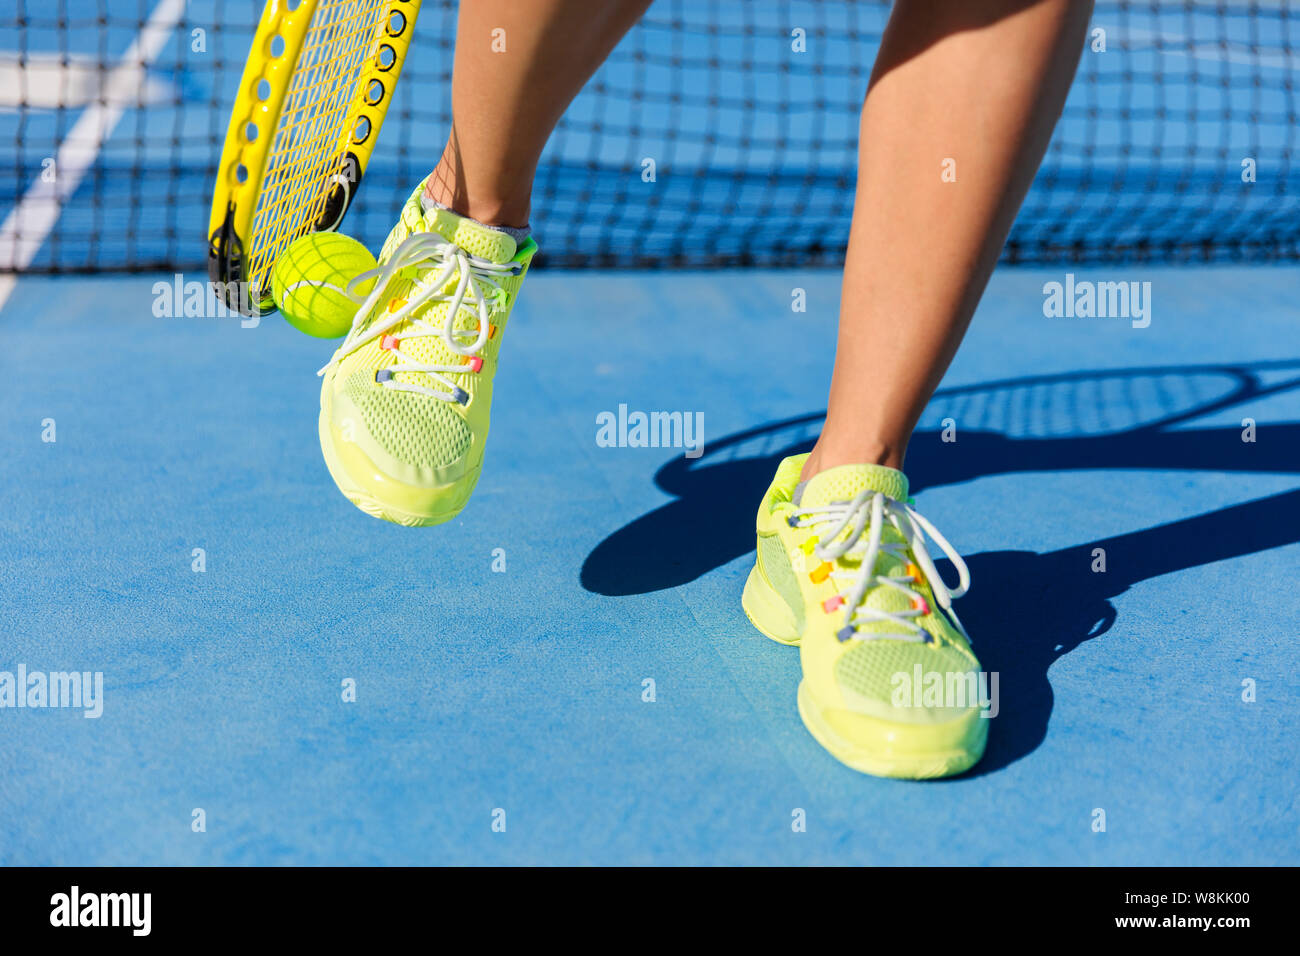 Sport Athlet herauf Kugel mit Tennisschläger. Weibliche Spieler mit einer Technik mit Ihren Laufschuhen, während des Spiels auf Blau Hard Court zu holen. Nahaufnahme der Füße, neon gelb Mode Schuhe. Stockfoto